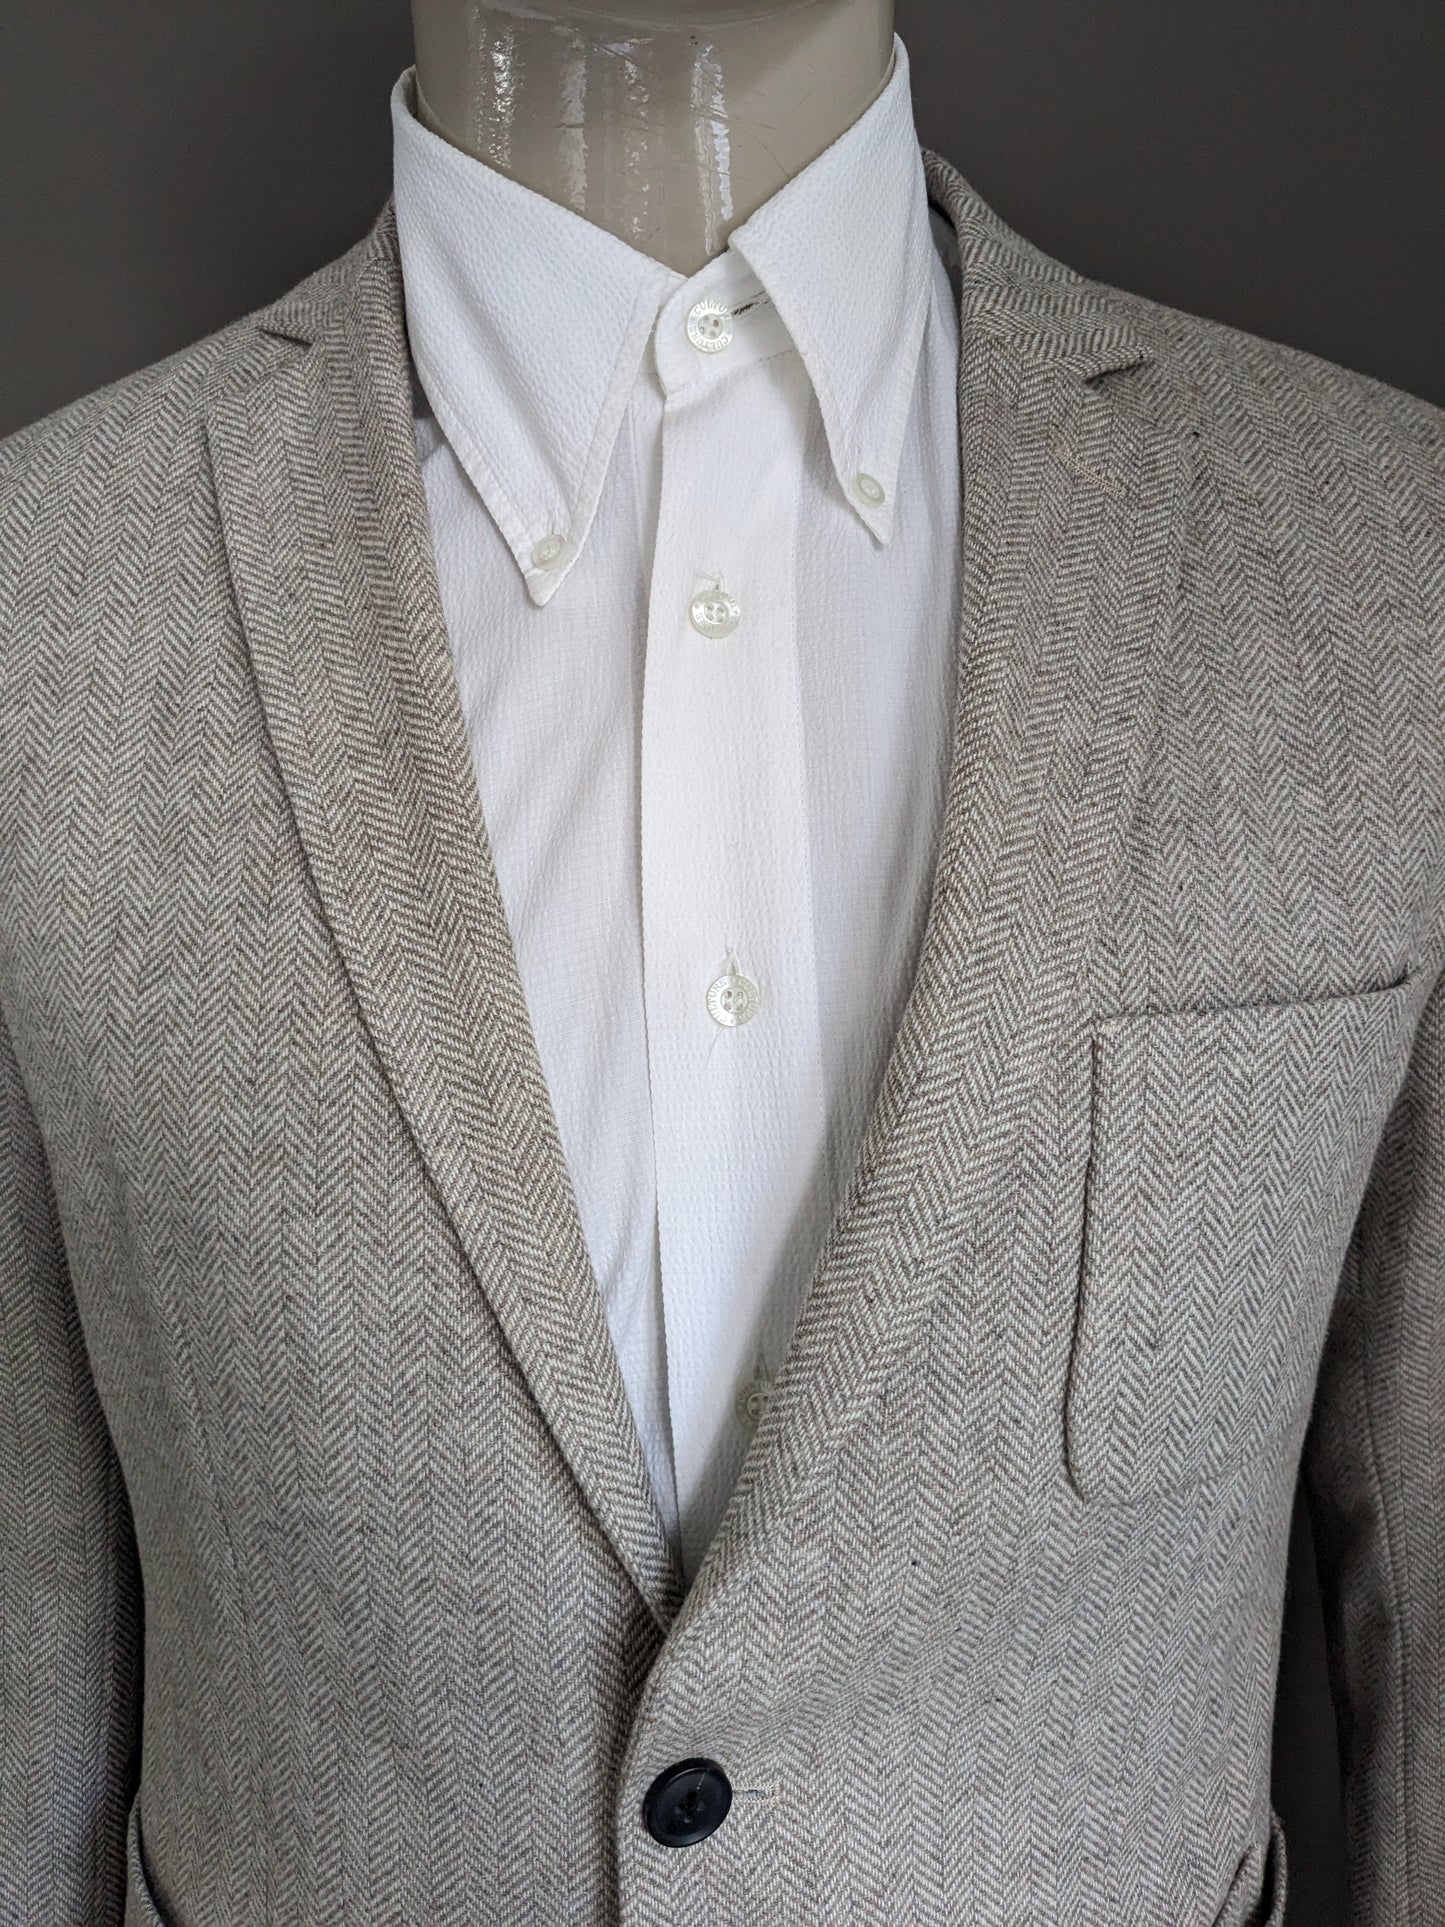 Veste en laine Homme sélectionnée. Motif à chevrons brun beige. Taille 50 / M. 40% de laine.